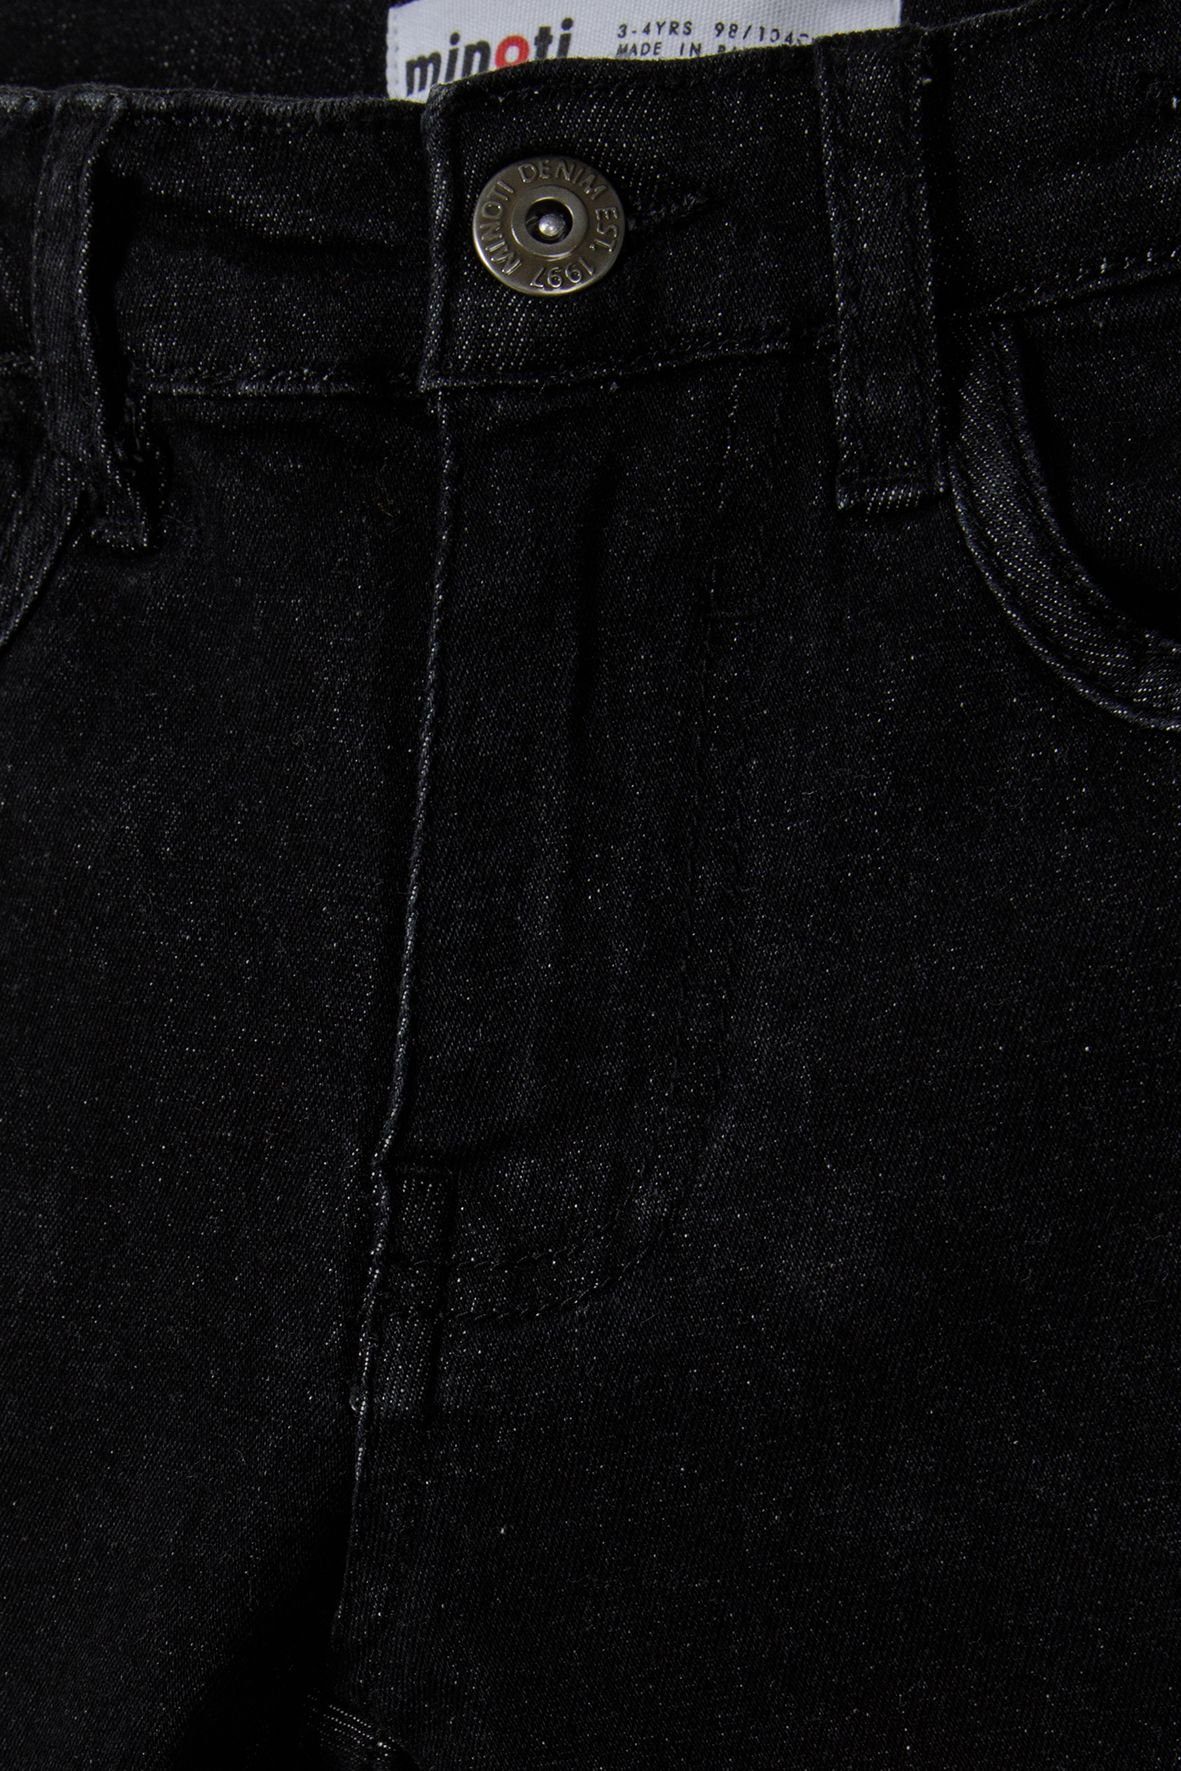 Schwarz Bein engem Slim-fit-Jeans mit MINOTI (12m-14y)